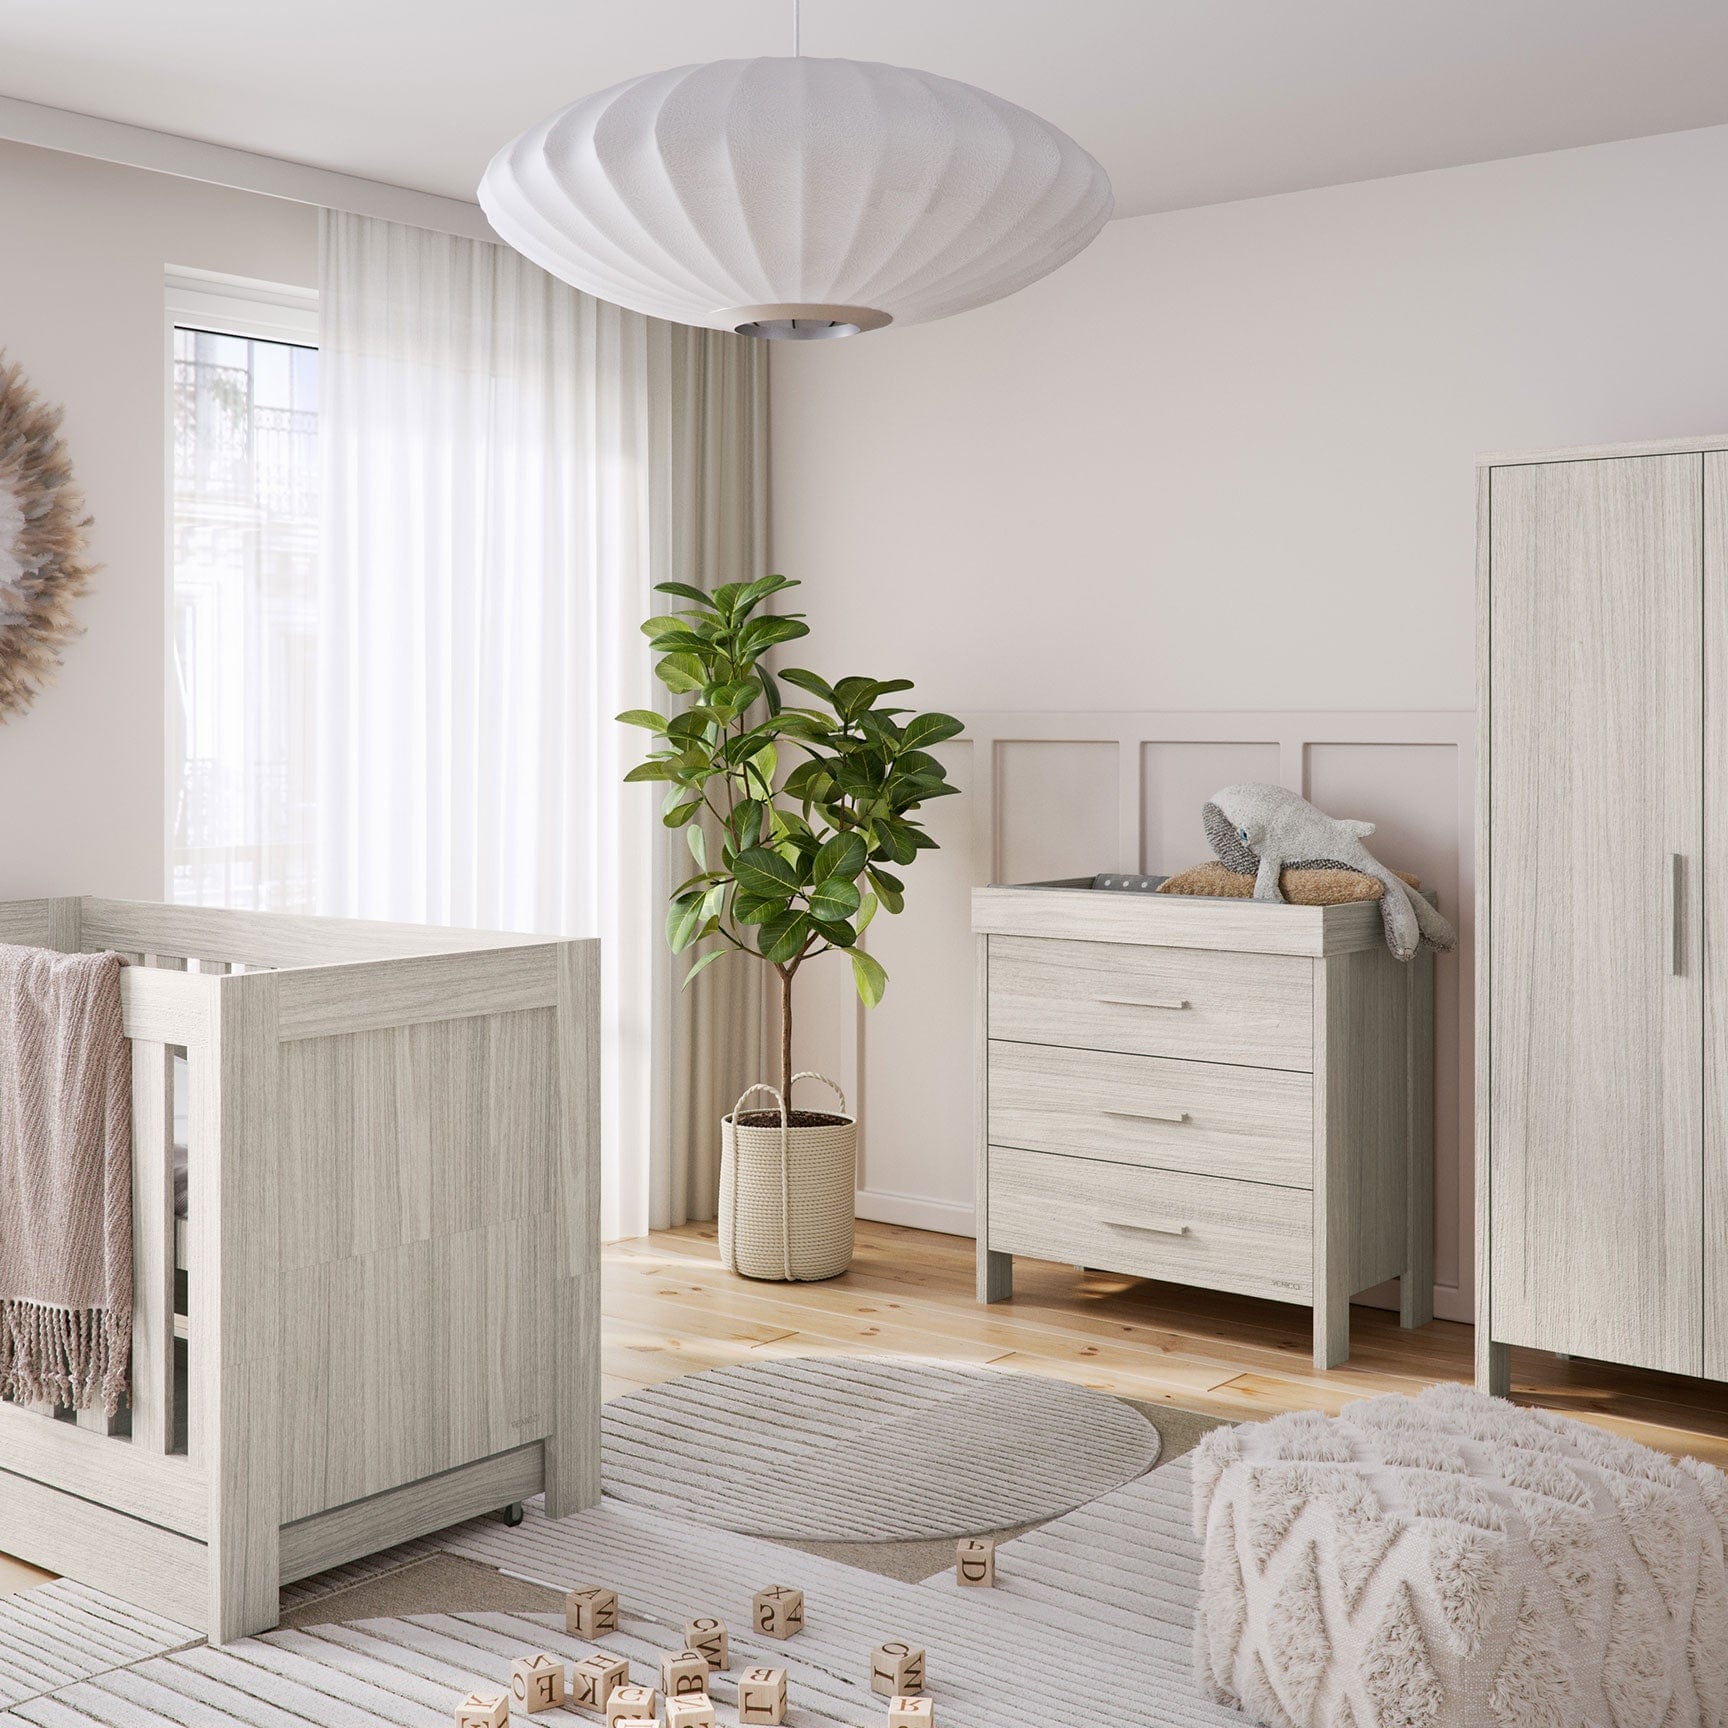 Venicci Nursery Room Sets Venicci Forenzo 2 Piece Wardrobe Roomset in Nordic White